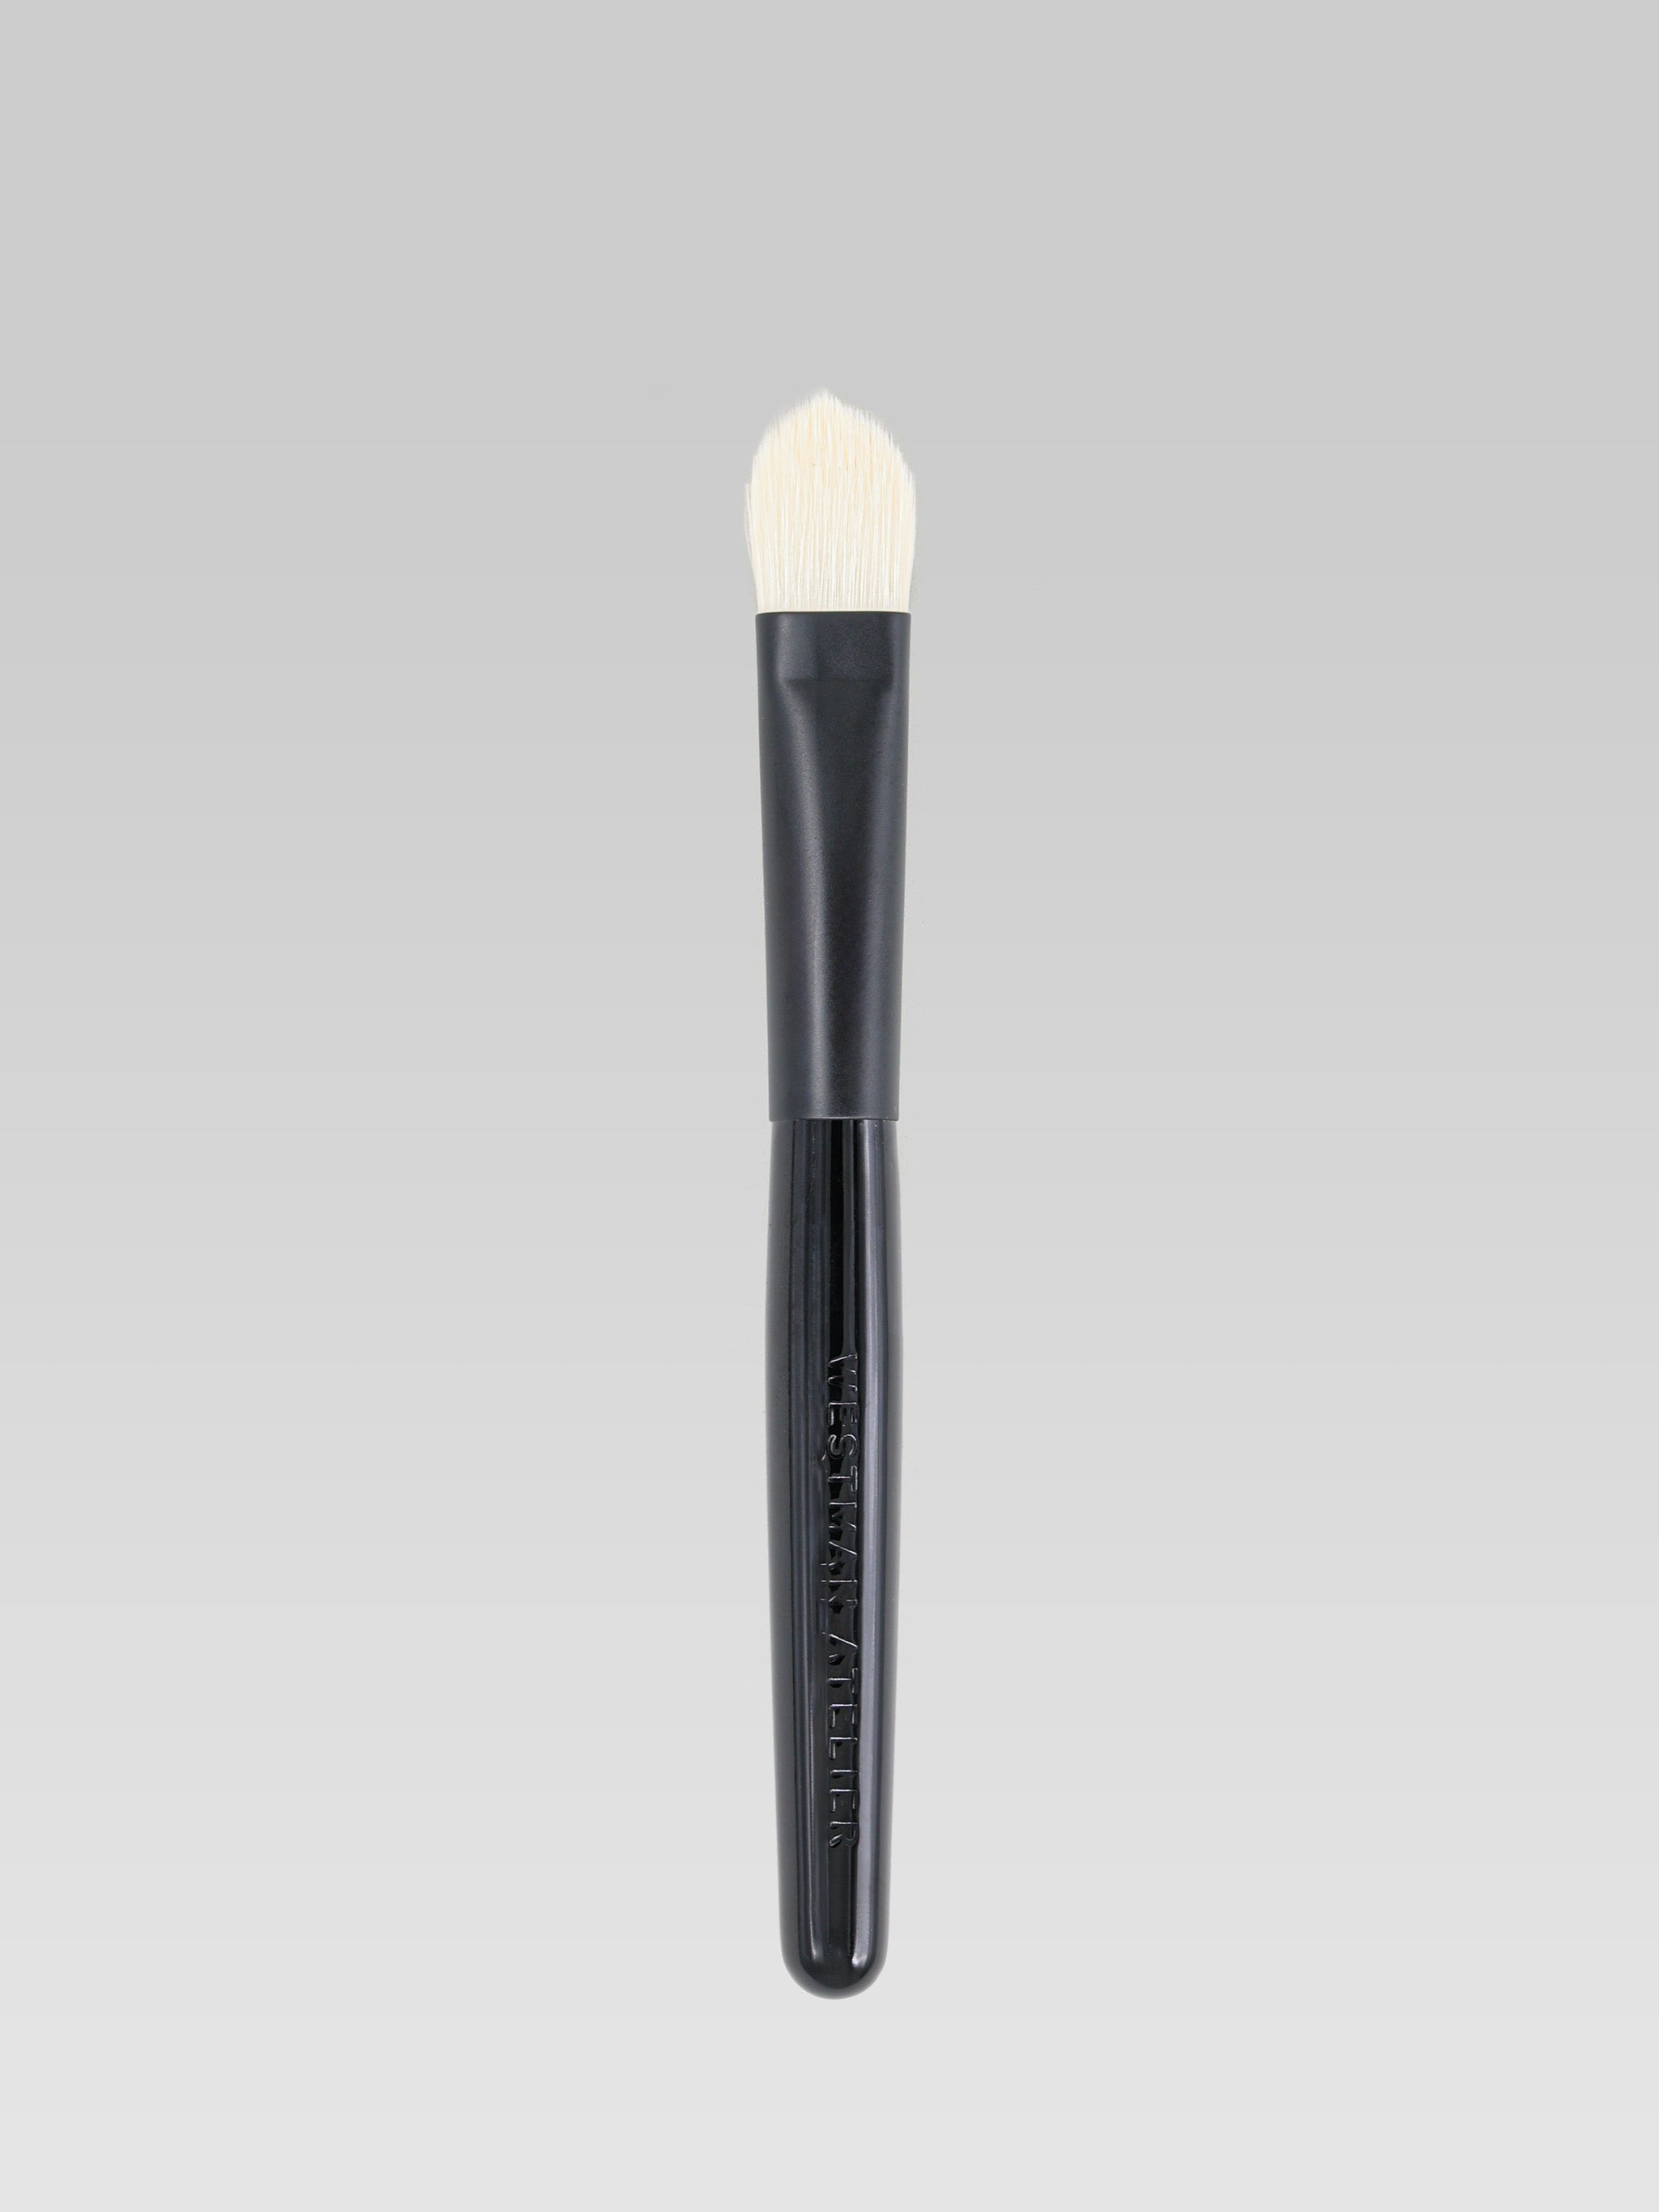 Westman Atelier Eyeshadow Brush I product shot